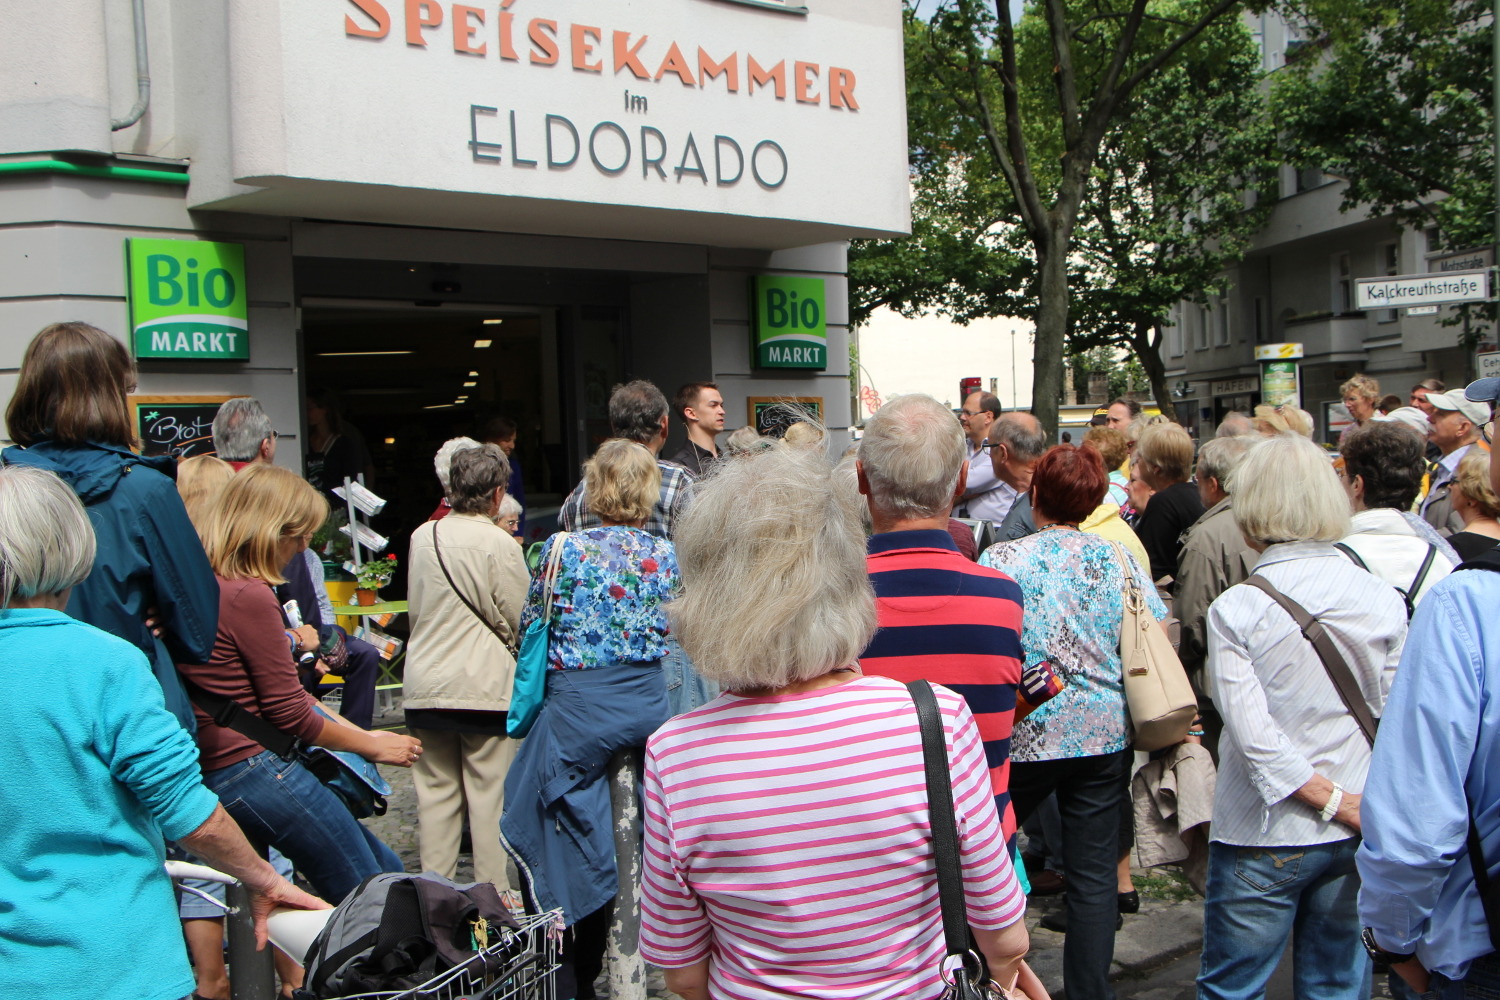 Menschen stehen vor einem Bio-Markt mit der Aufschrift Speisekammer im Eldorado